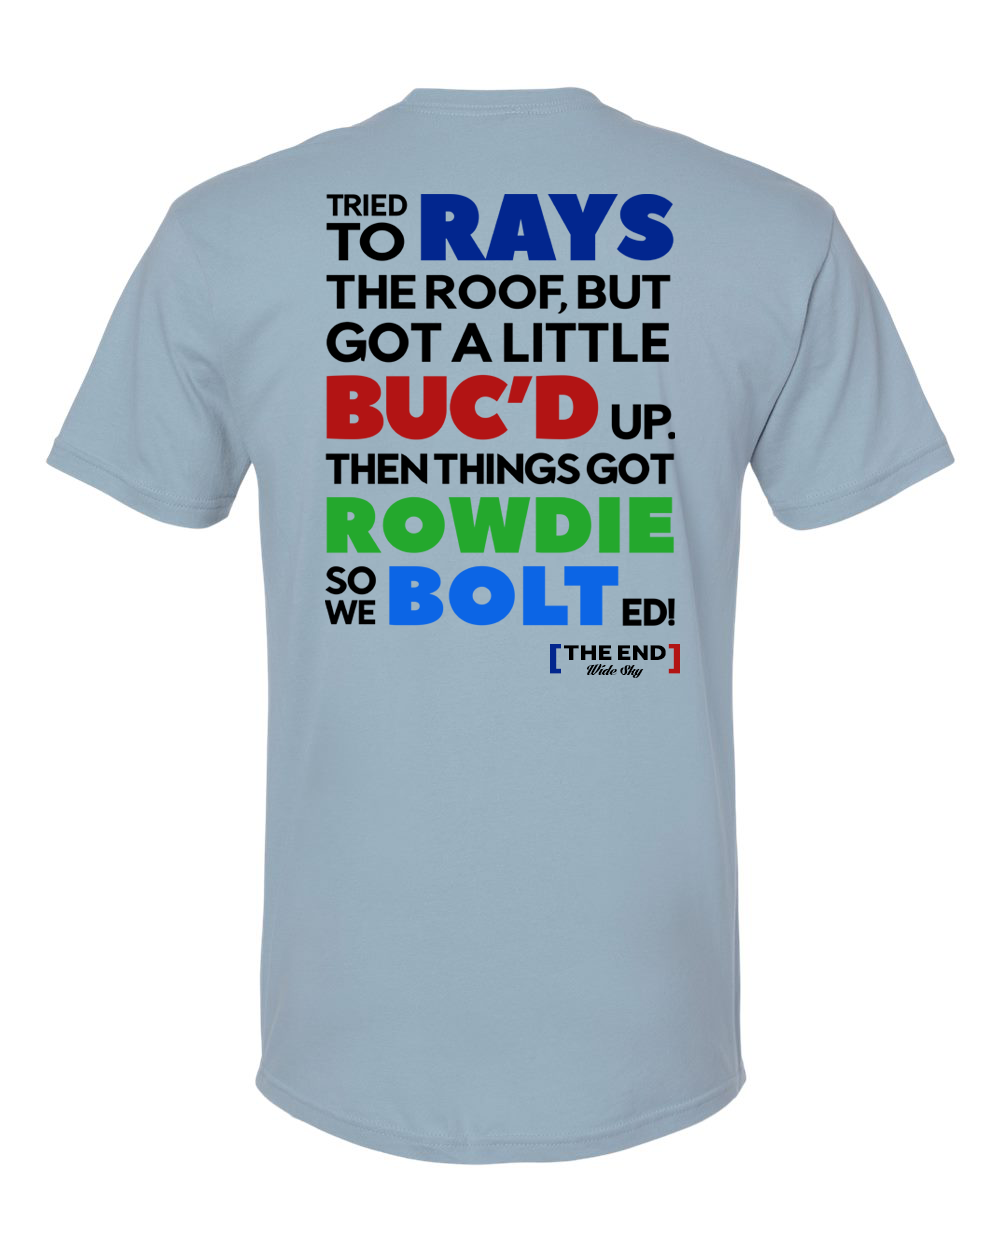 rays t shirt shop